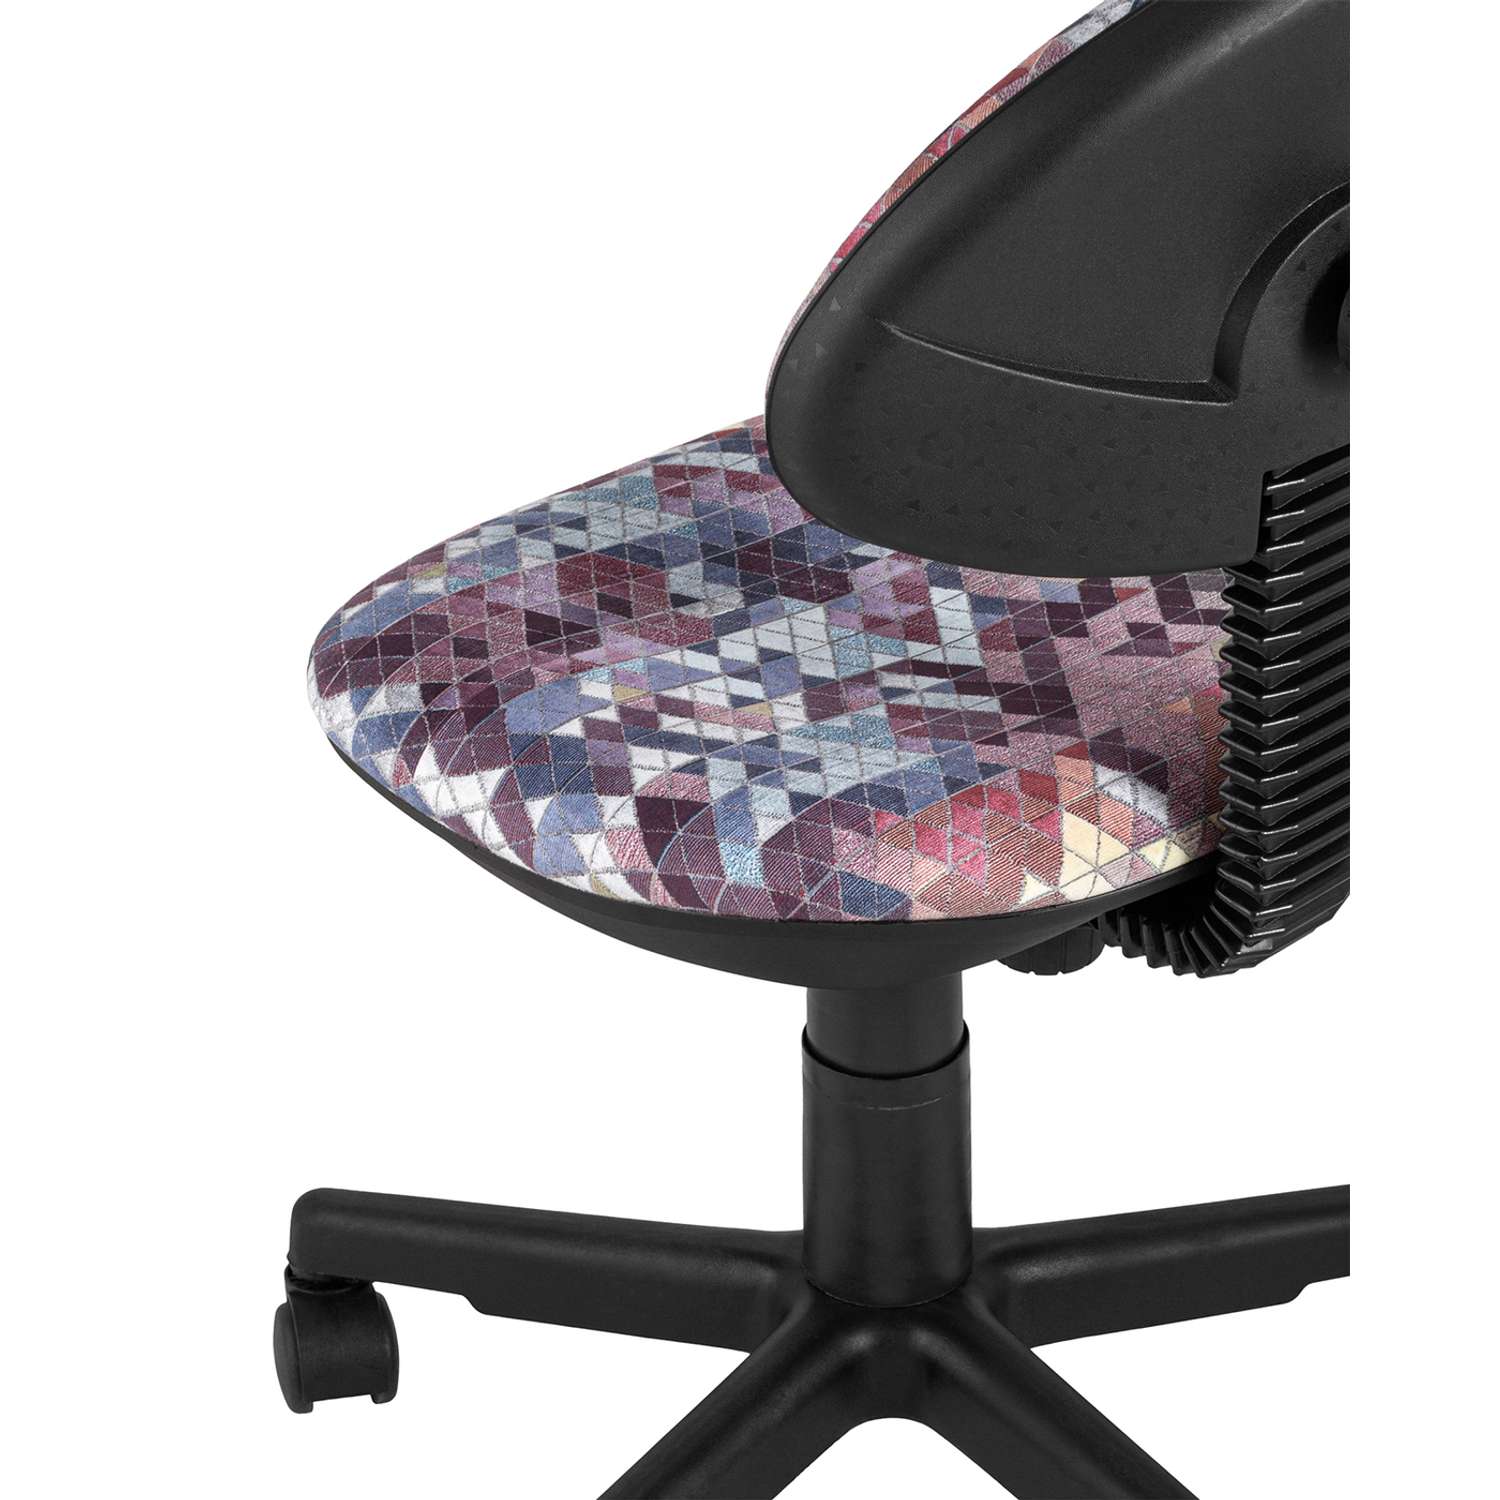 Детское компьютерное кресло Stool Group умка абстракция красная prisma 380 - фото 9